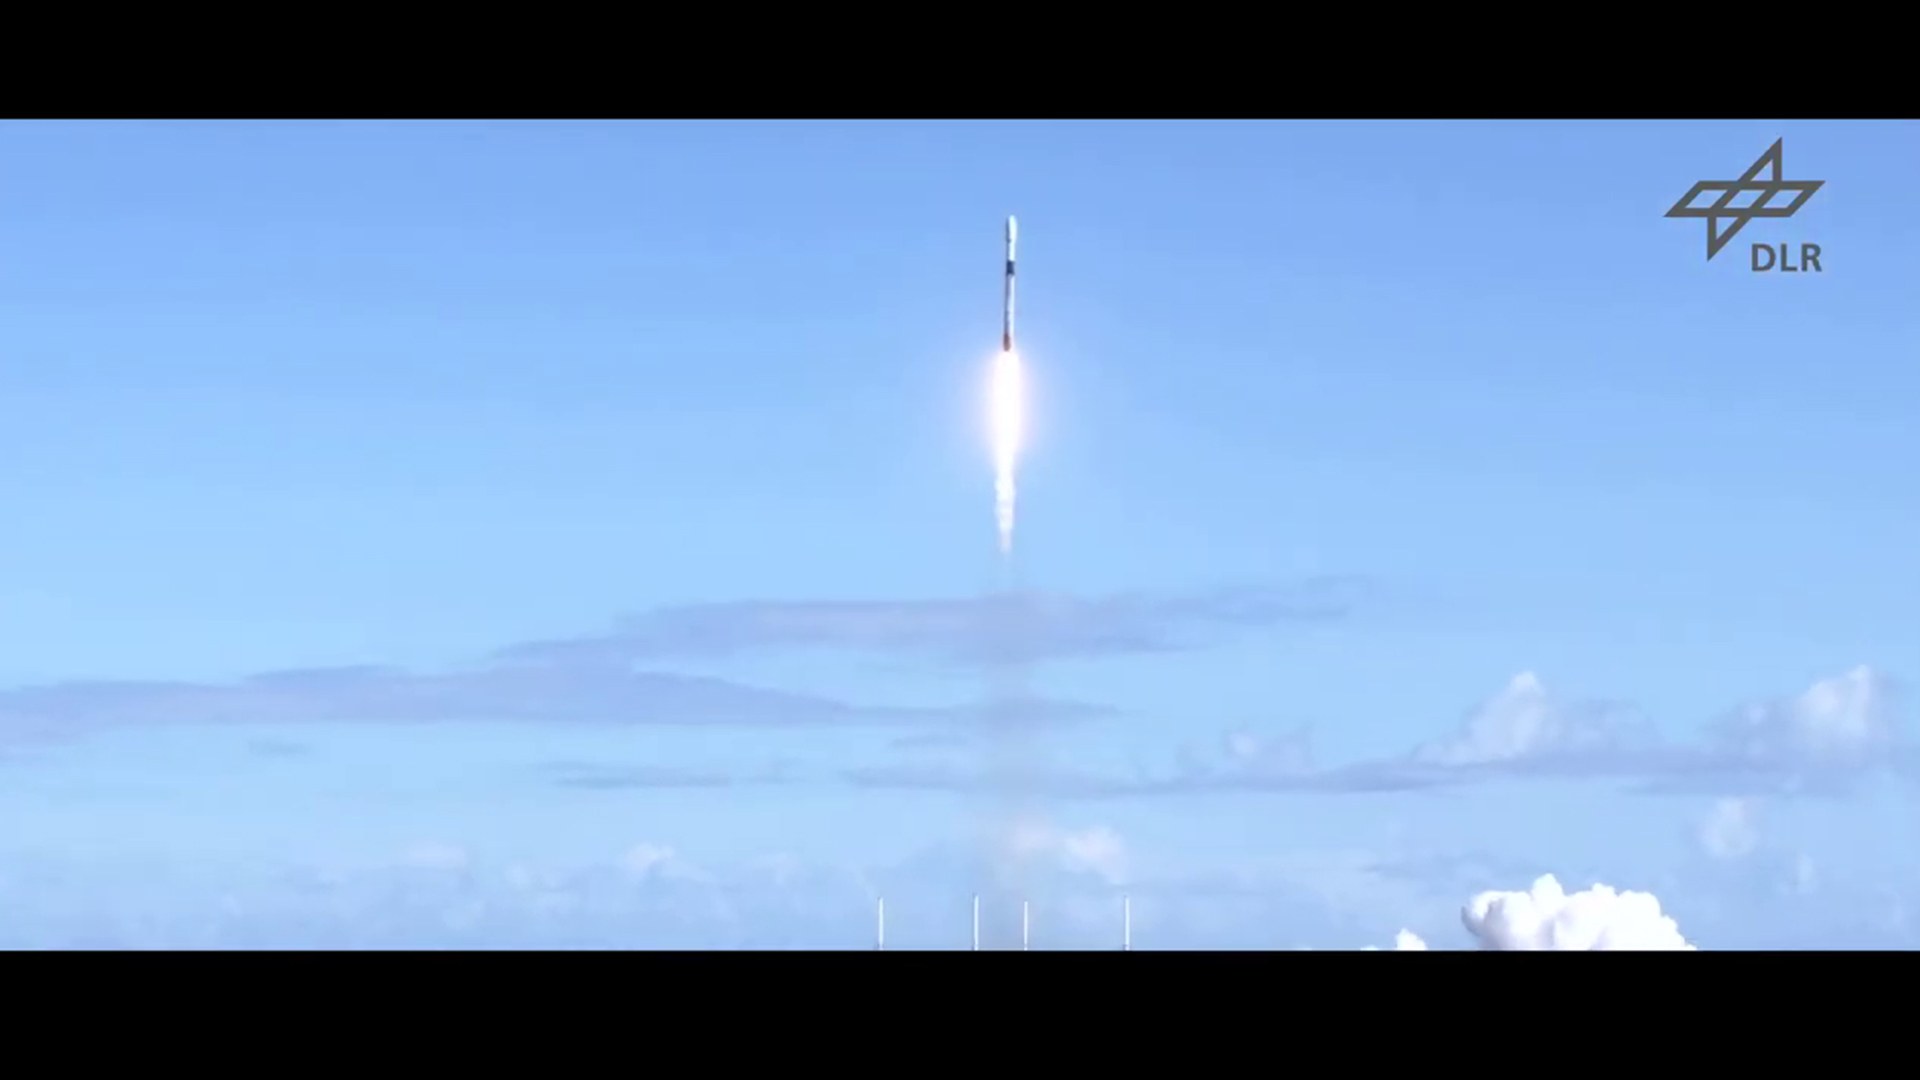 Umweltsatellit EnMAP steht kurz vor dem Start mit SpaceX aus Florida